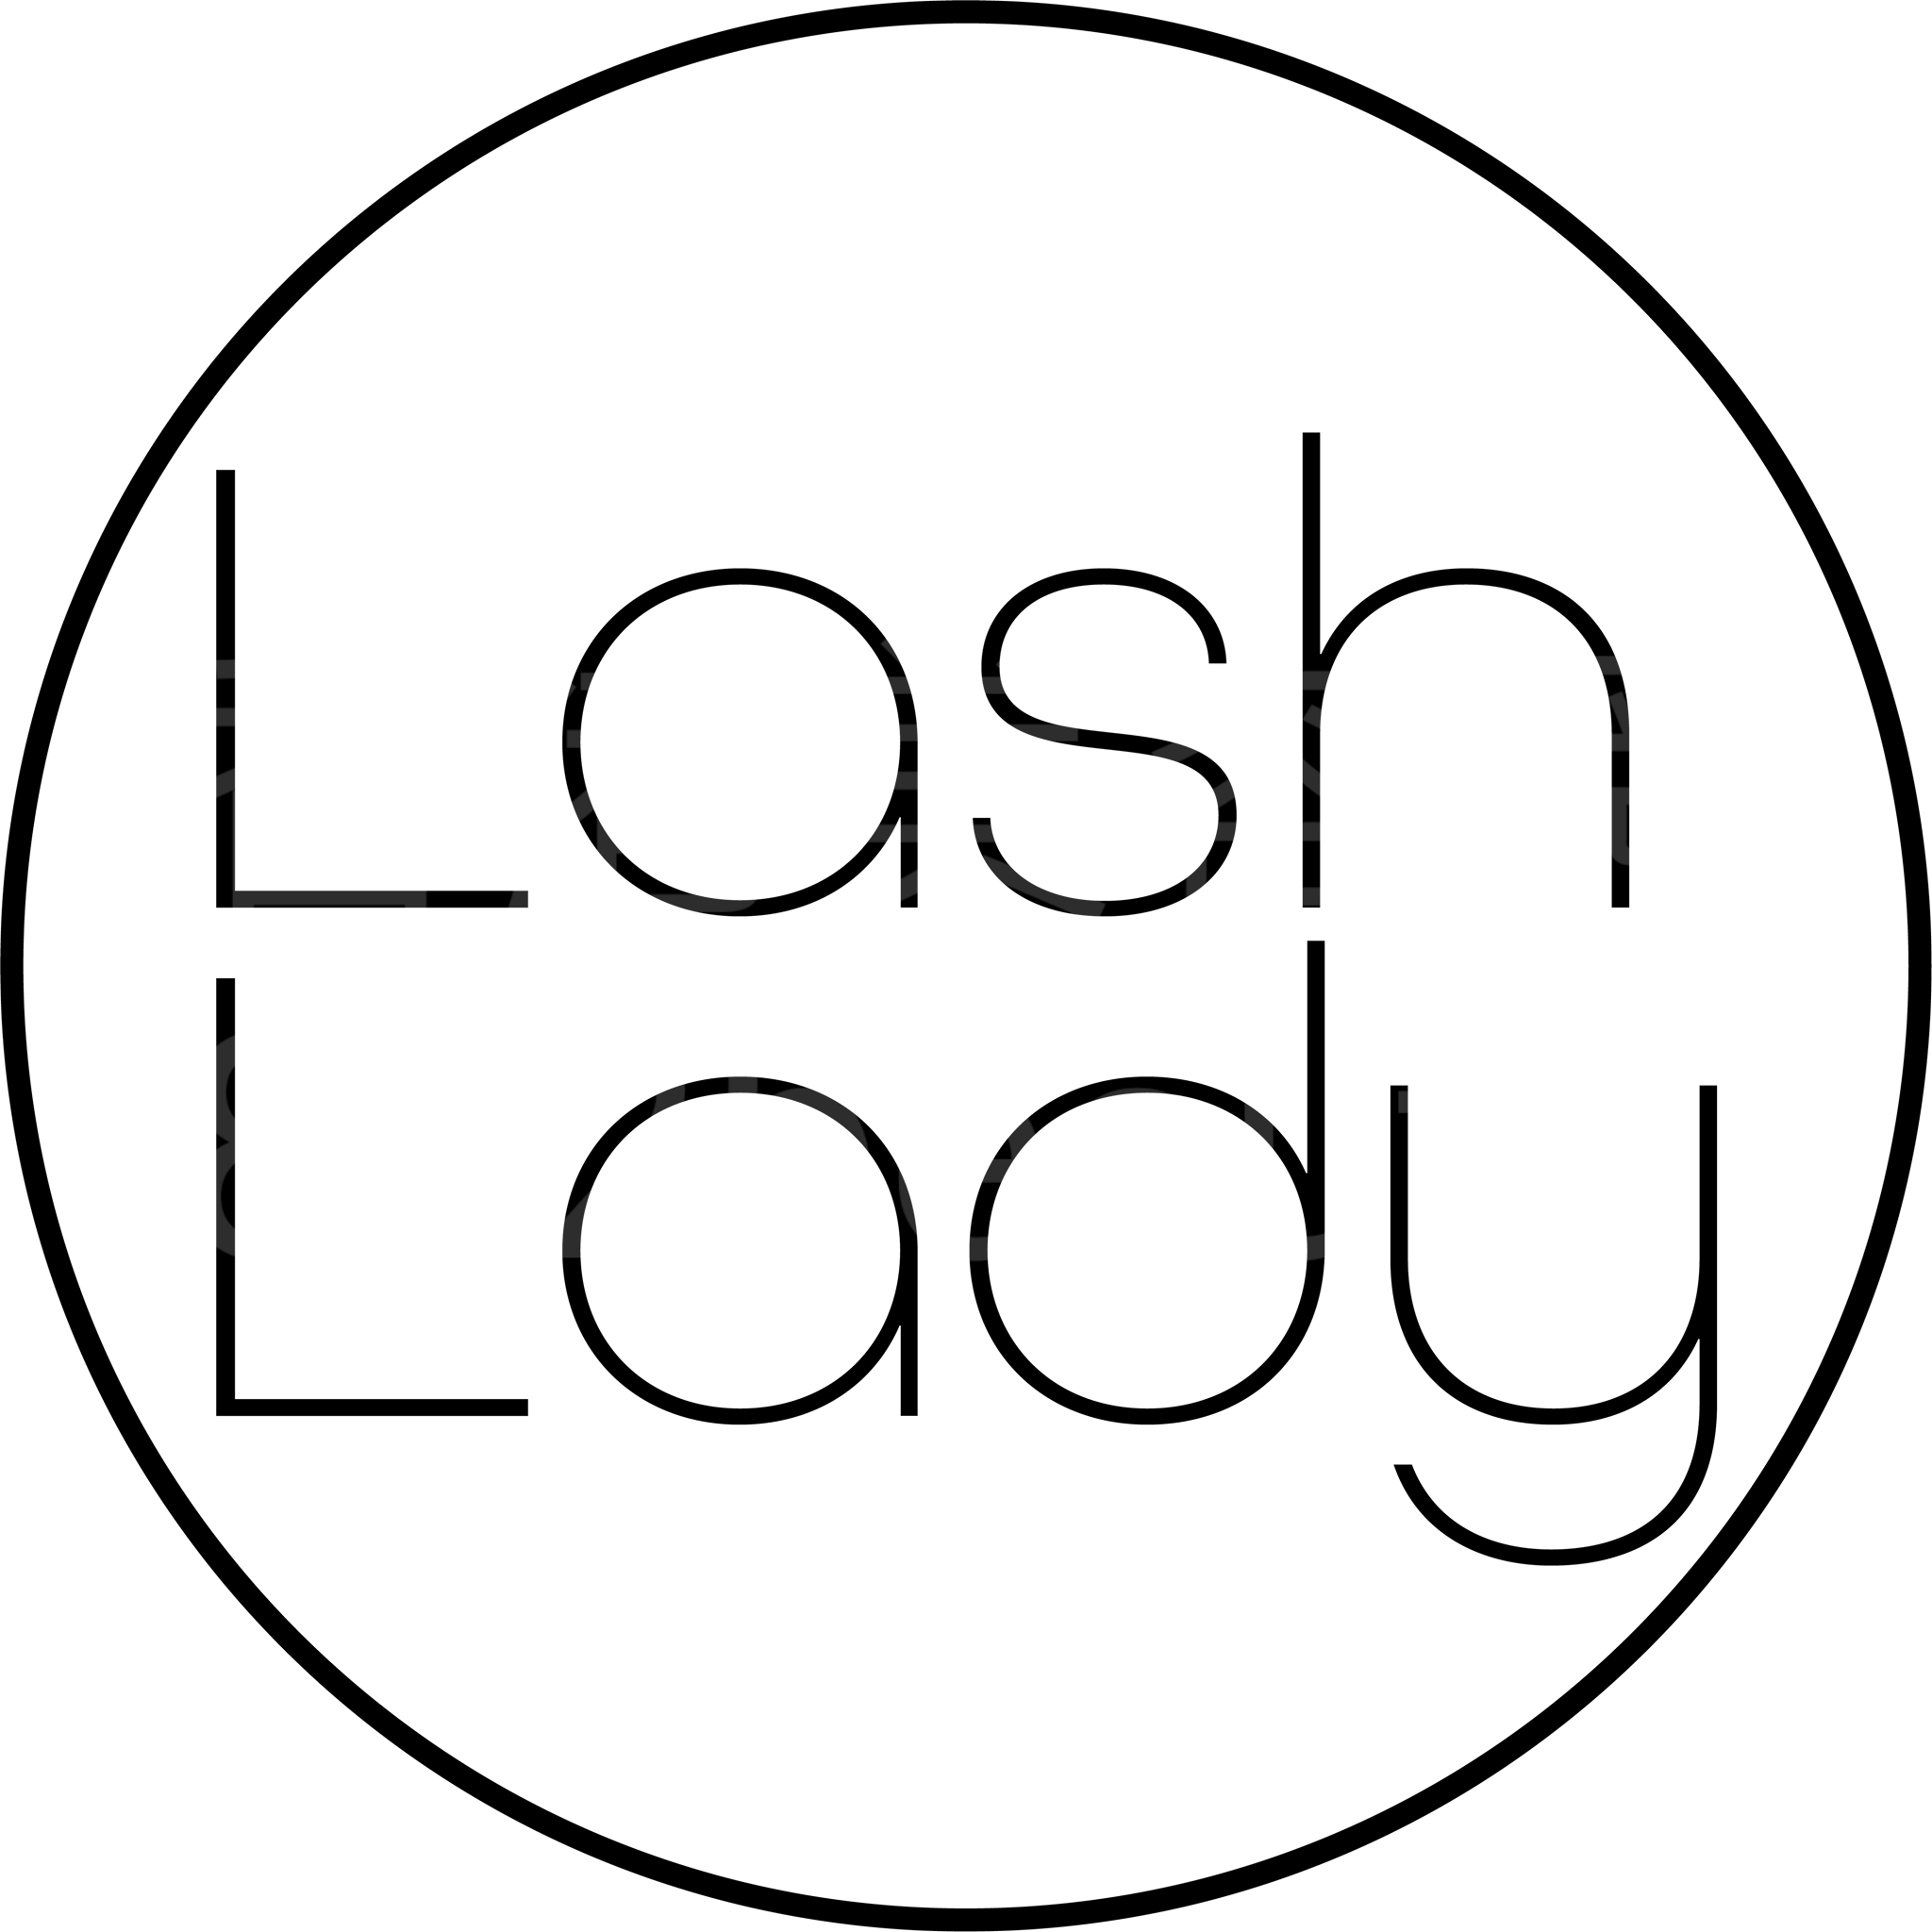 香港美容網 Hong Kong Beauty Salon 美容院 / 美容師: Lash Lady